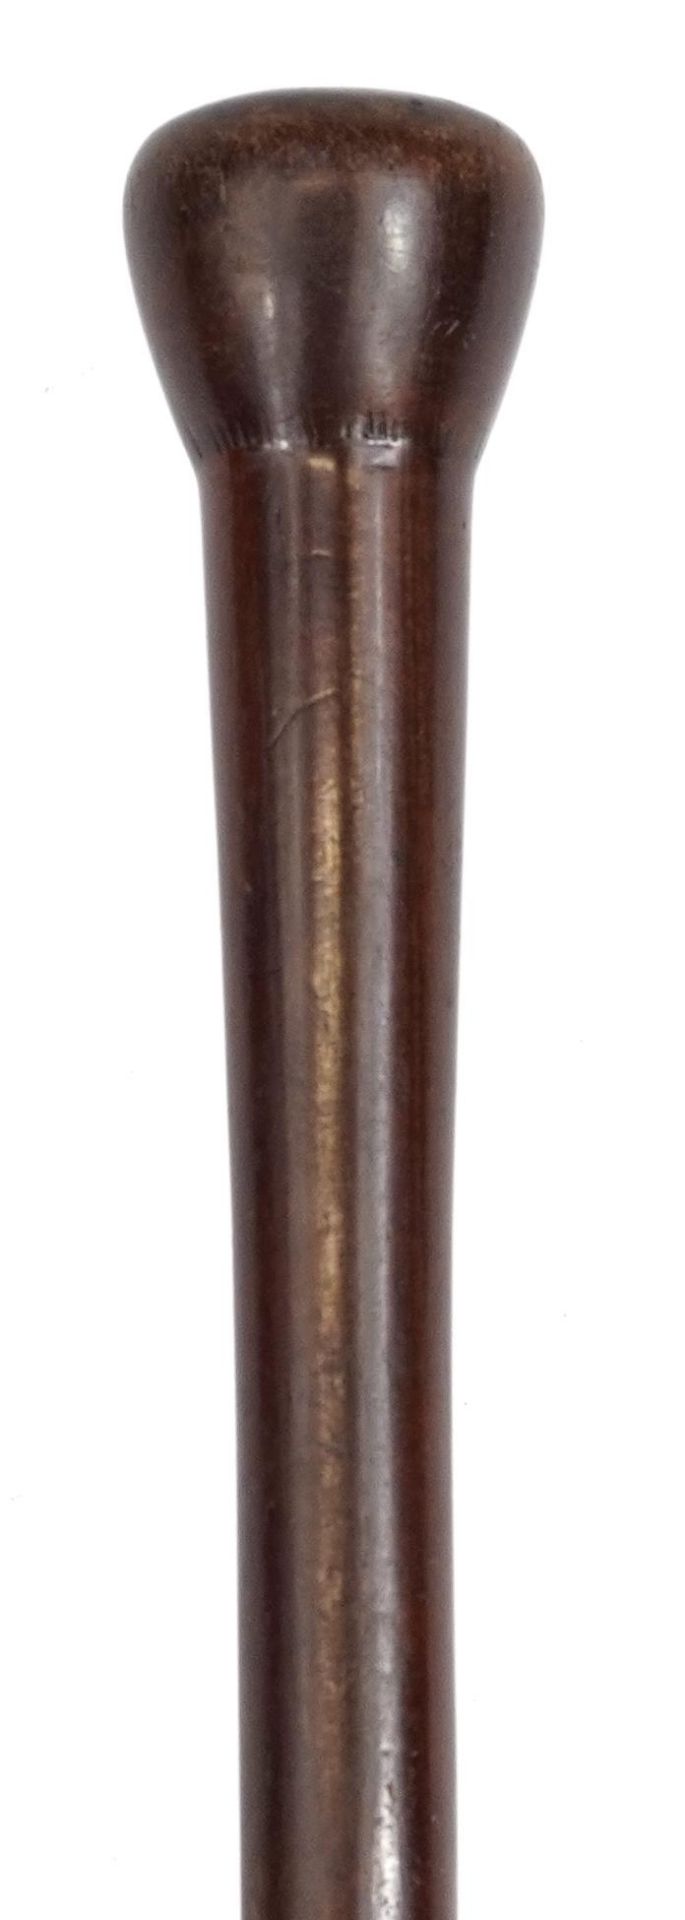 Tribal interest hardwood walking stick, 92cm in length